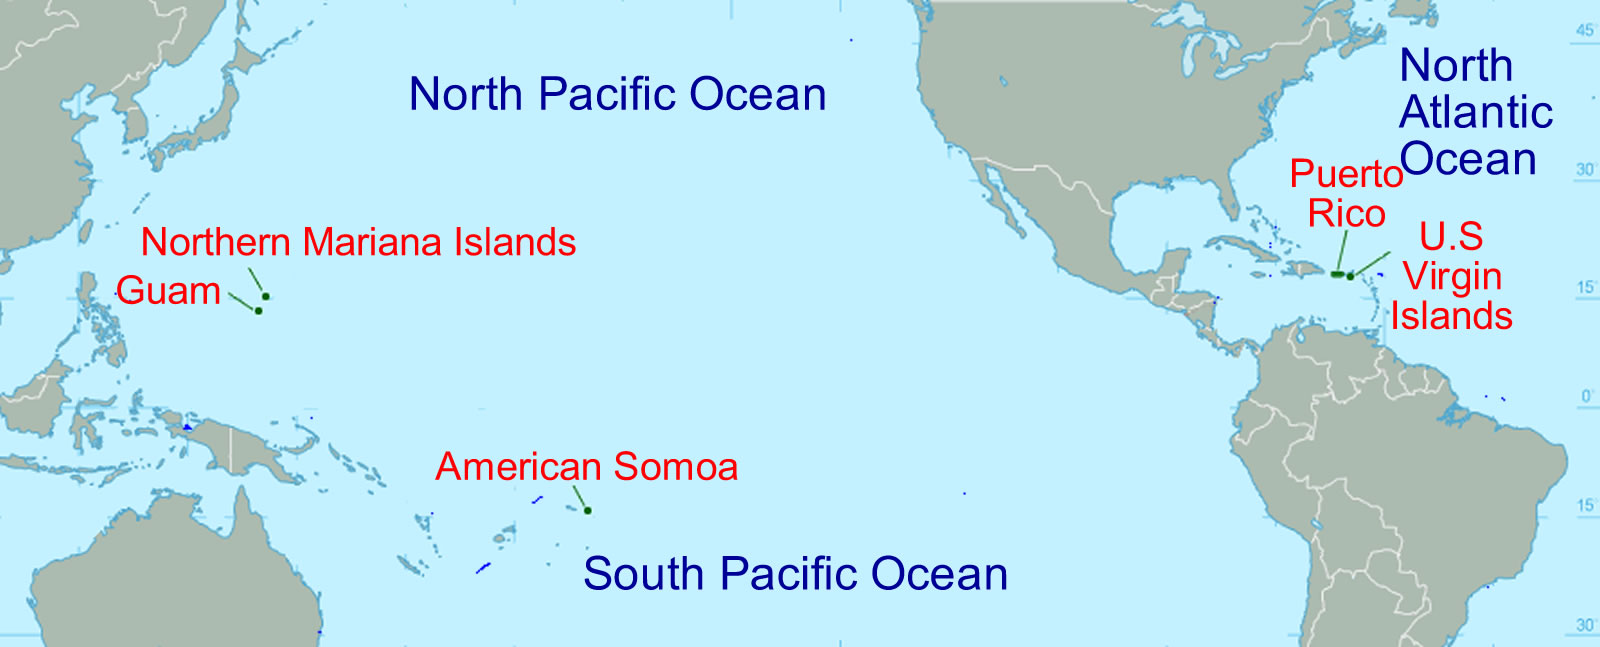 United States Territories